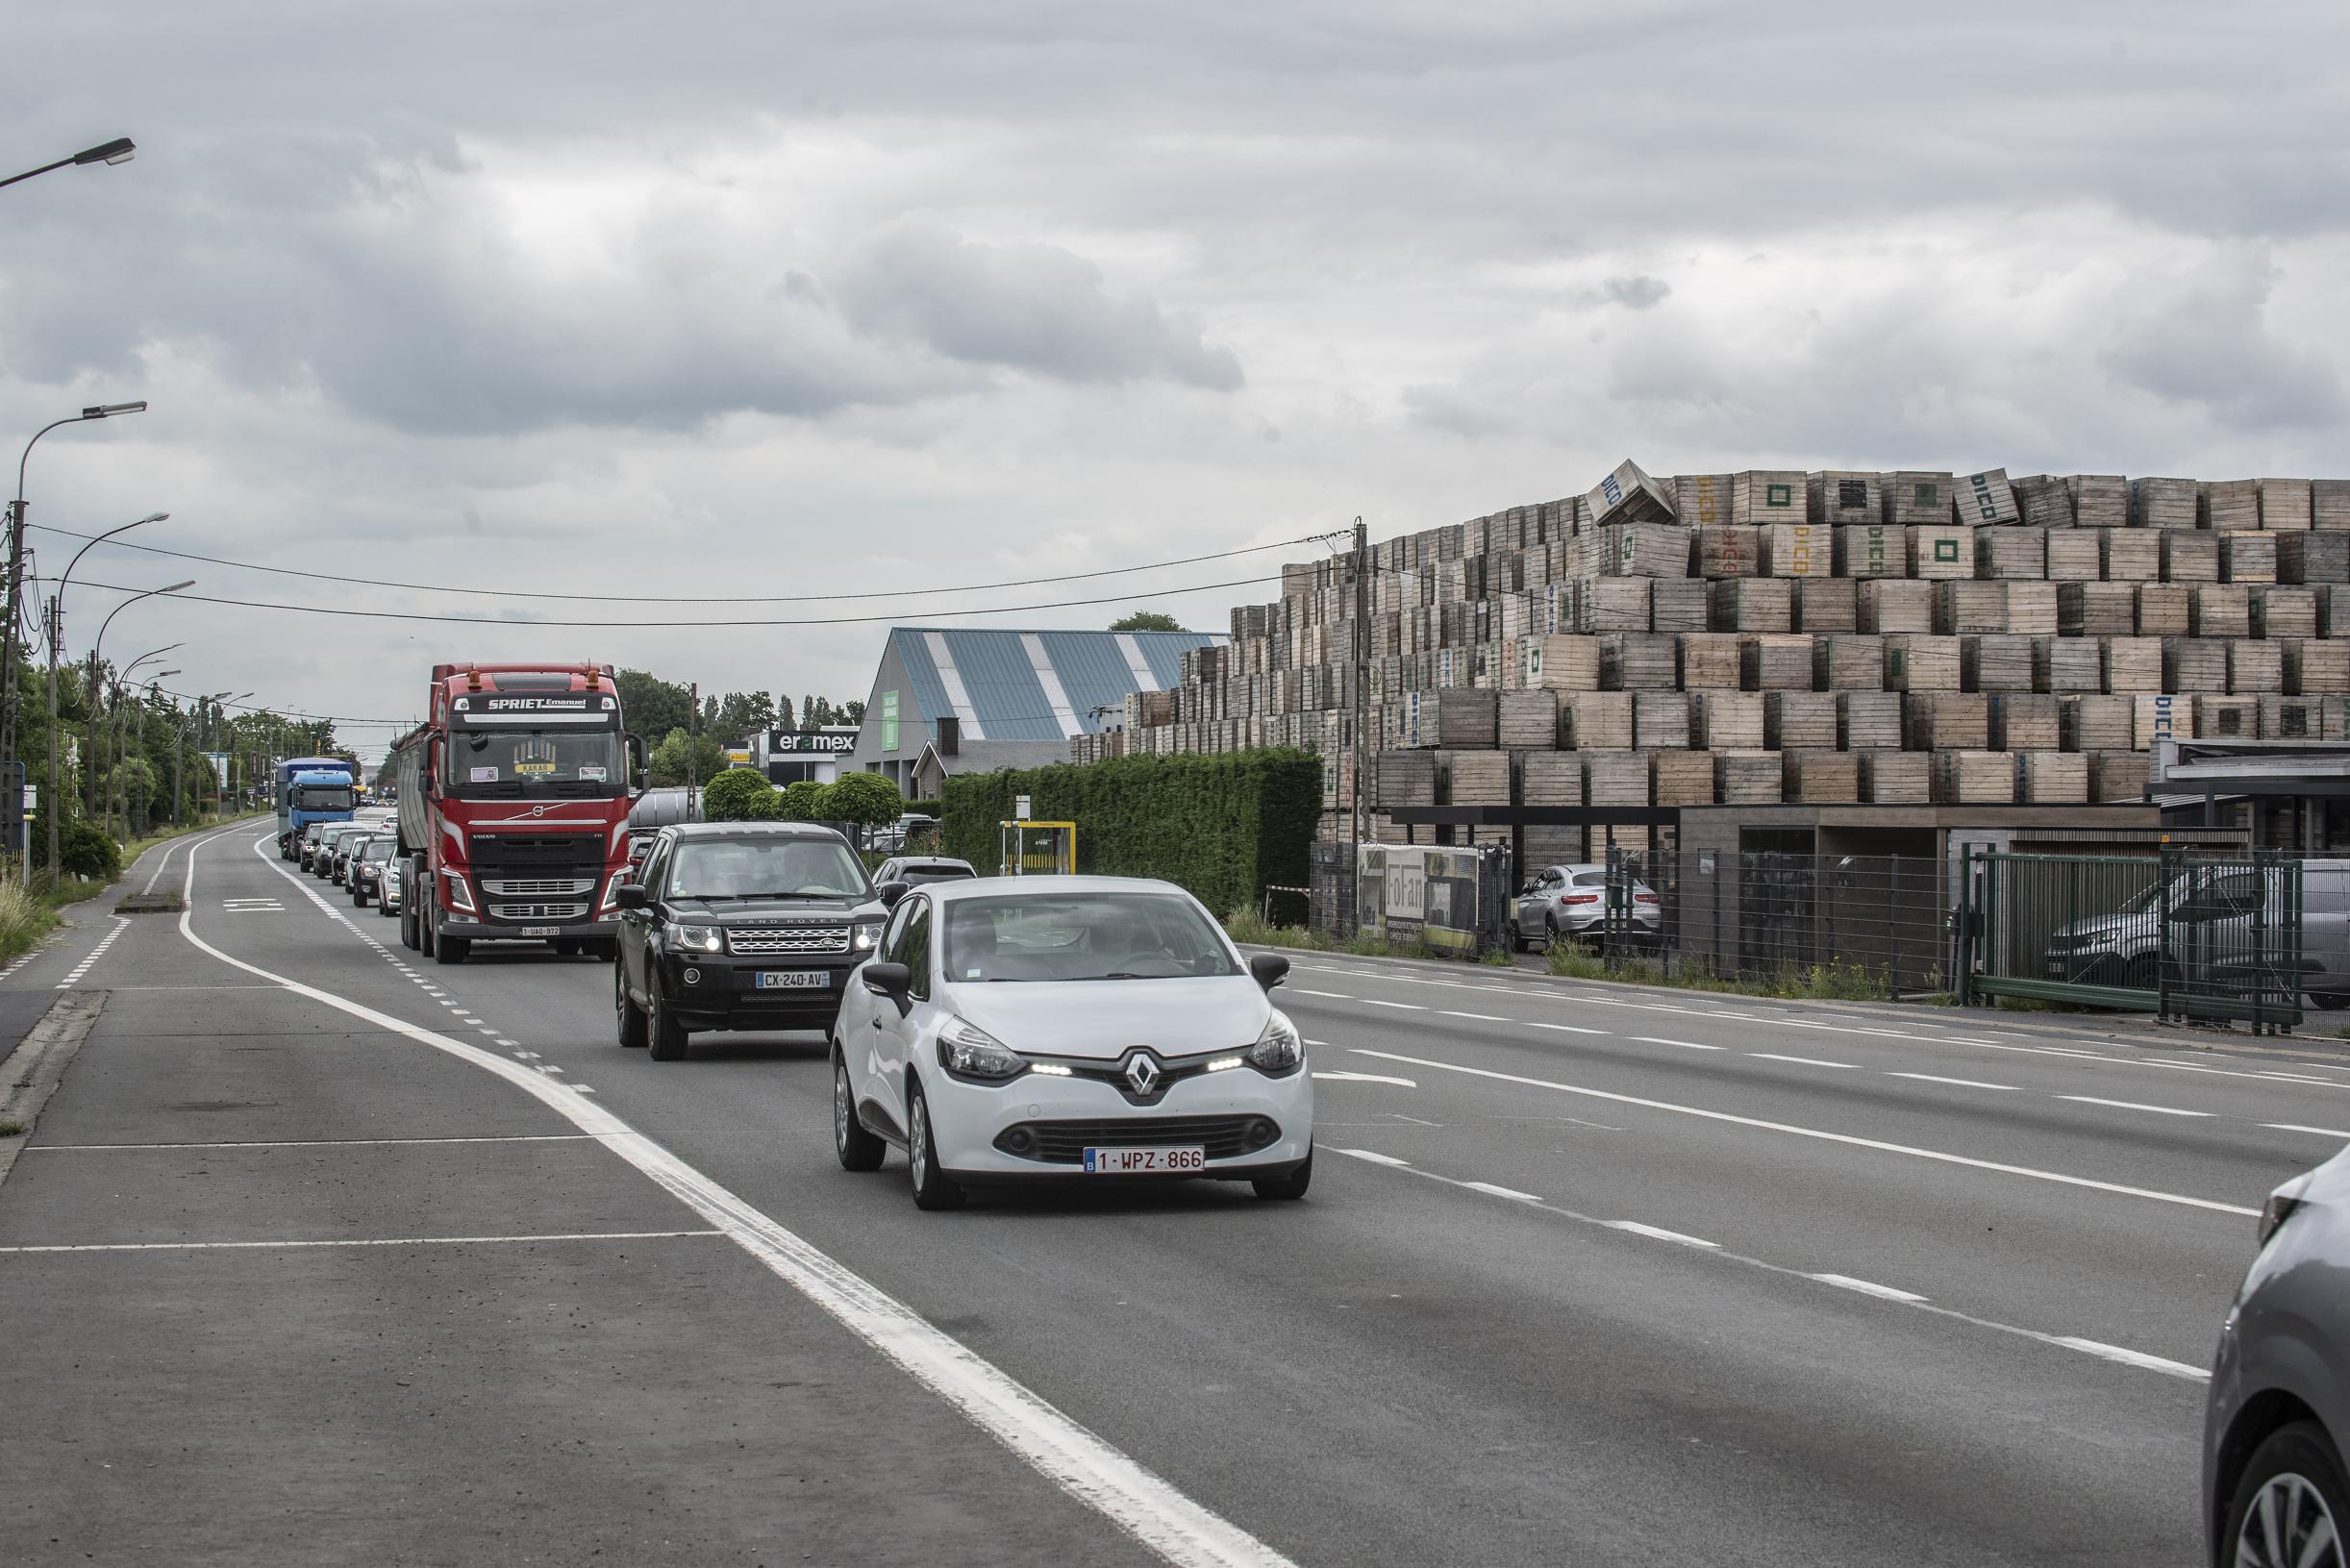 Vervoerregio Roeselare geeft negatief advies aan regering om van N37 Vlaamse Hoofdweg te maken: “Gezond verstand heeft het gehaald”